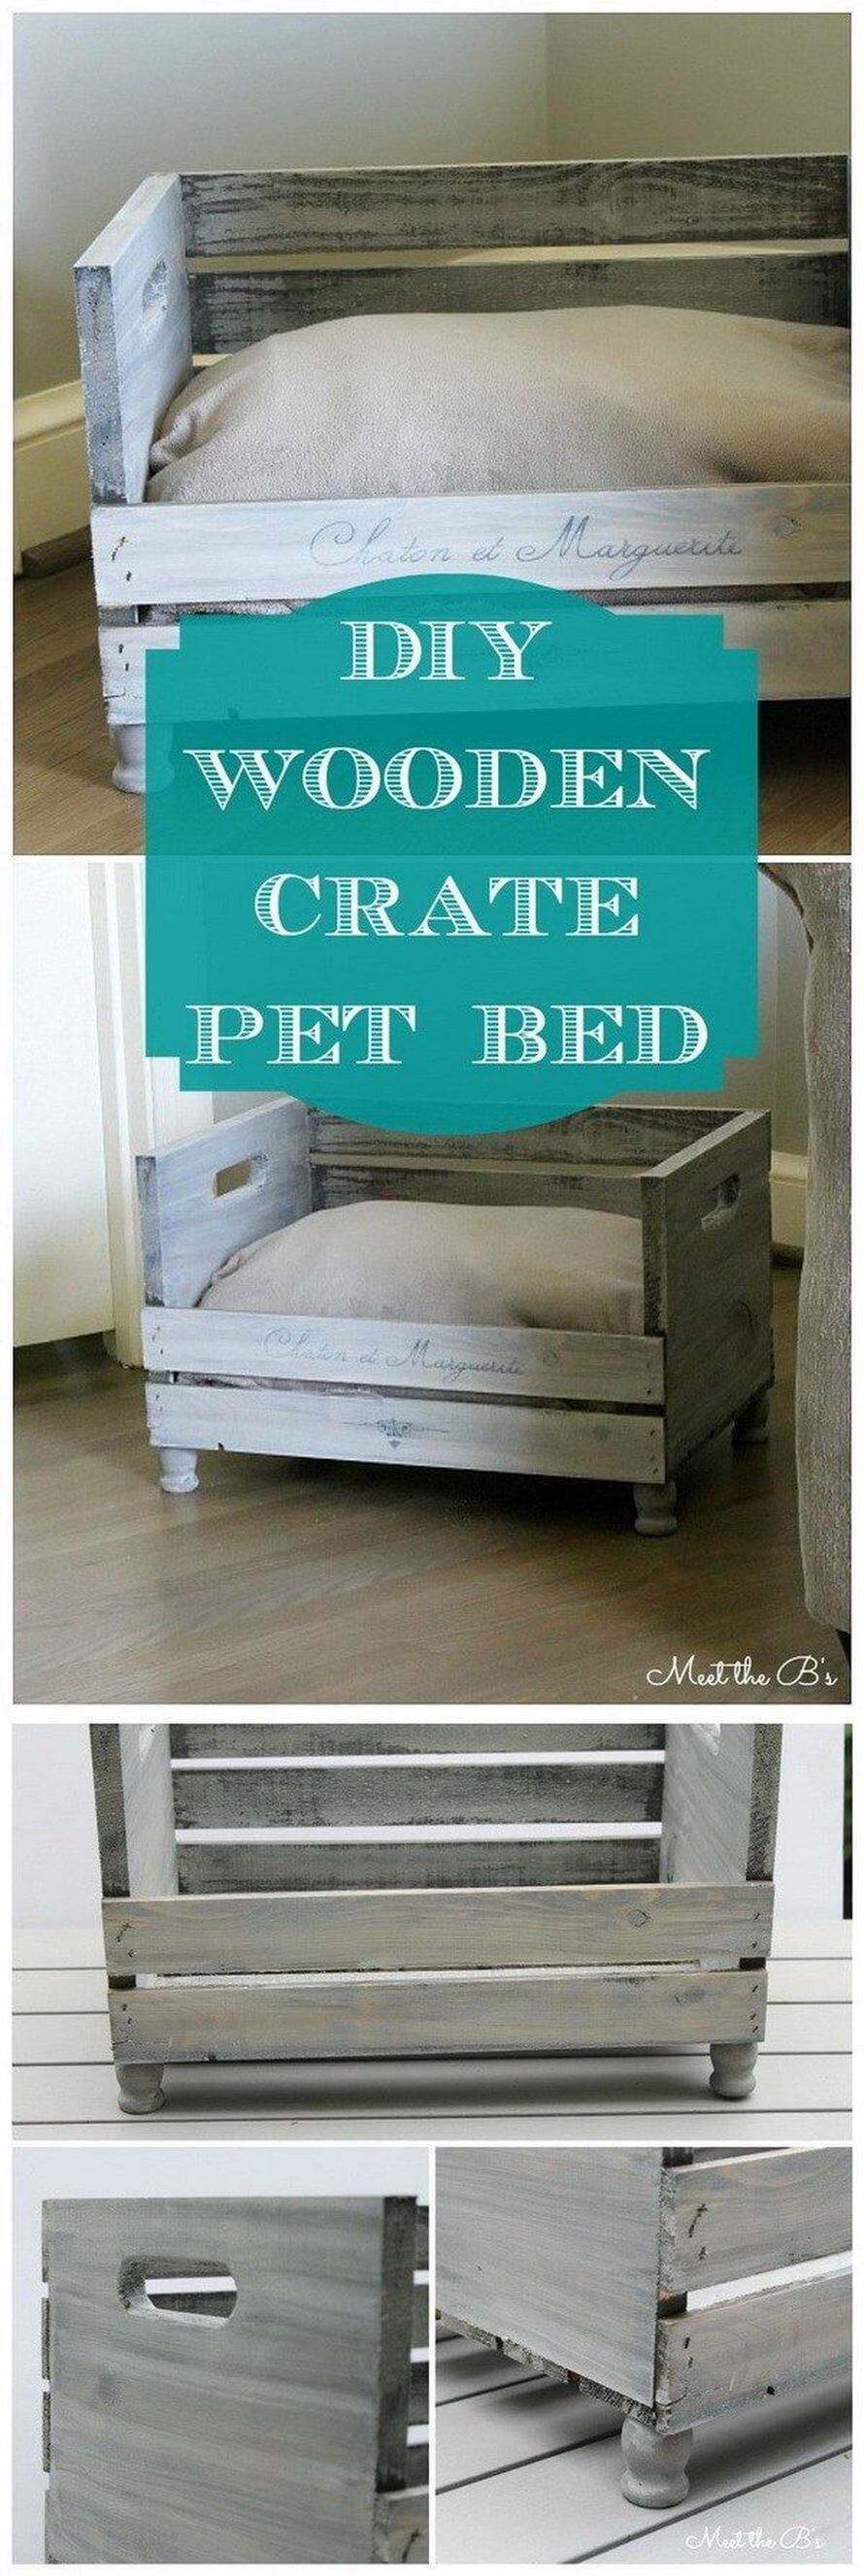 кровать для домашних животных из деревянных ящиков